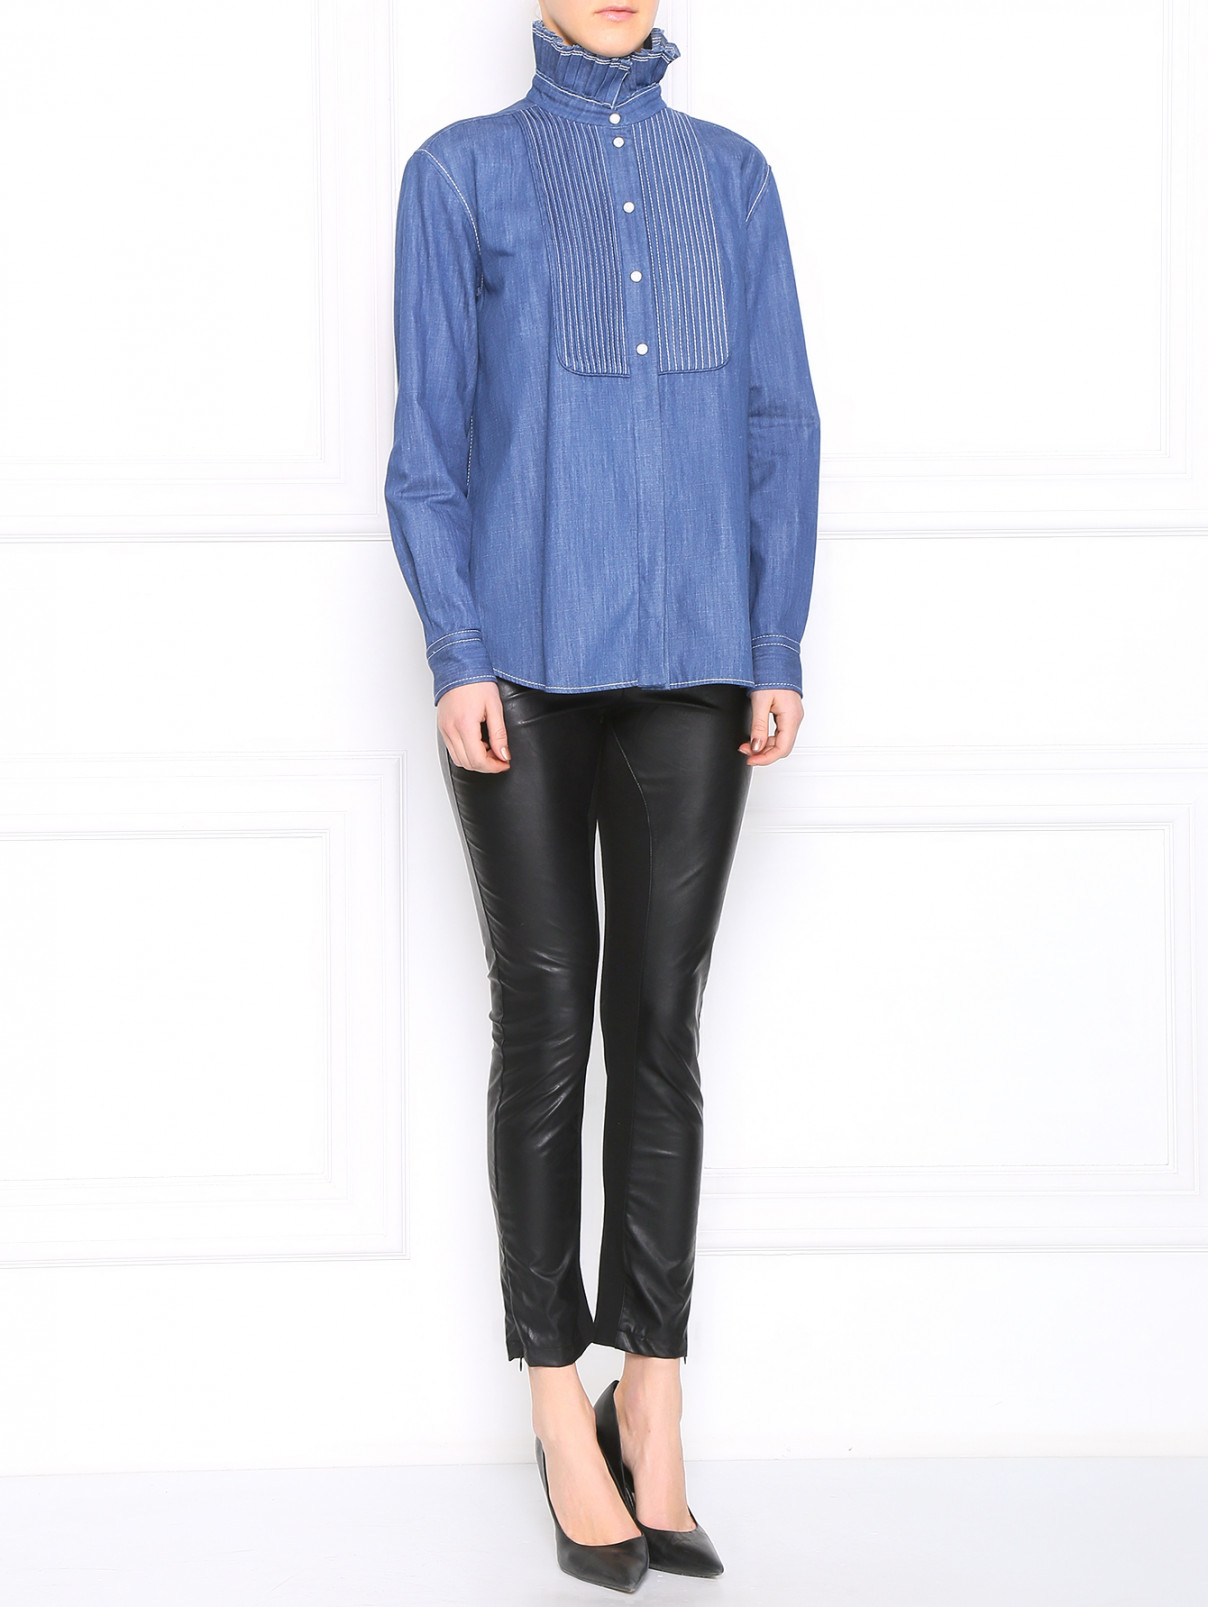 Рубашка из хлопка Sonia Rykiel  –  Модель Общий вид  – Цвет:  Синий